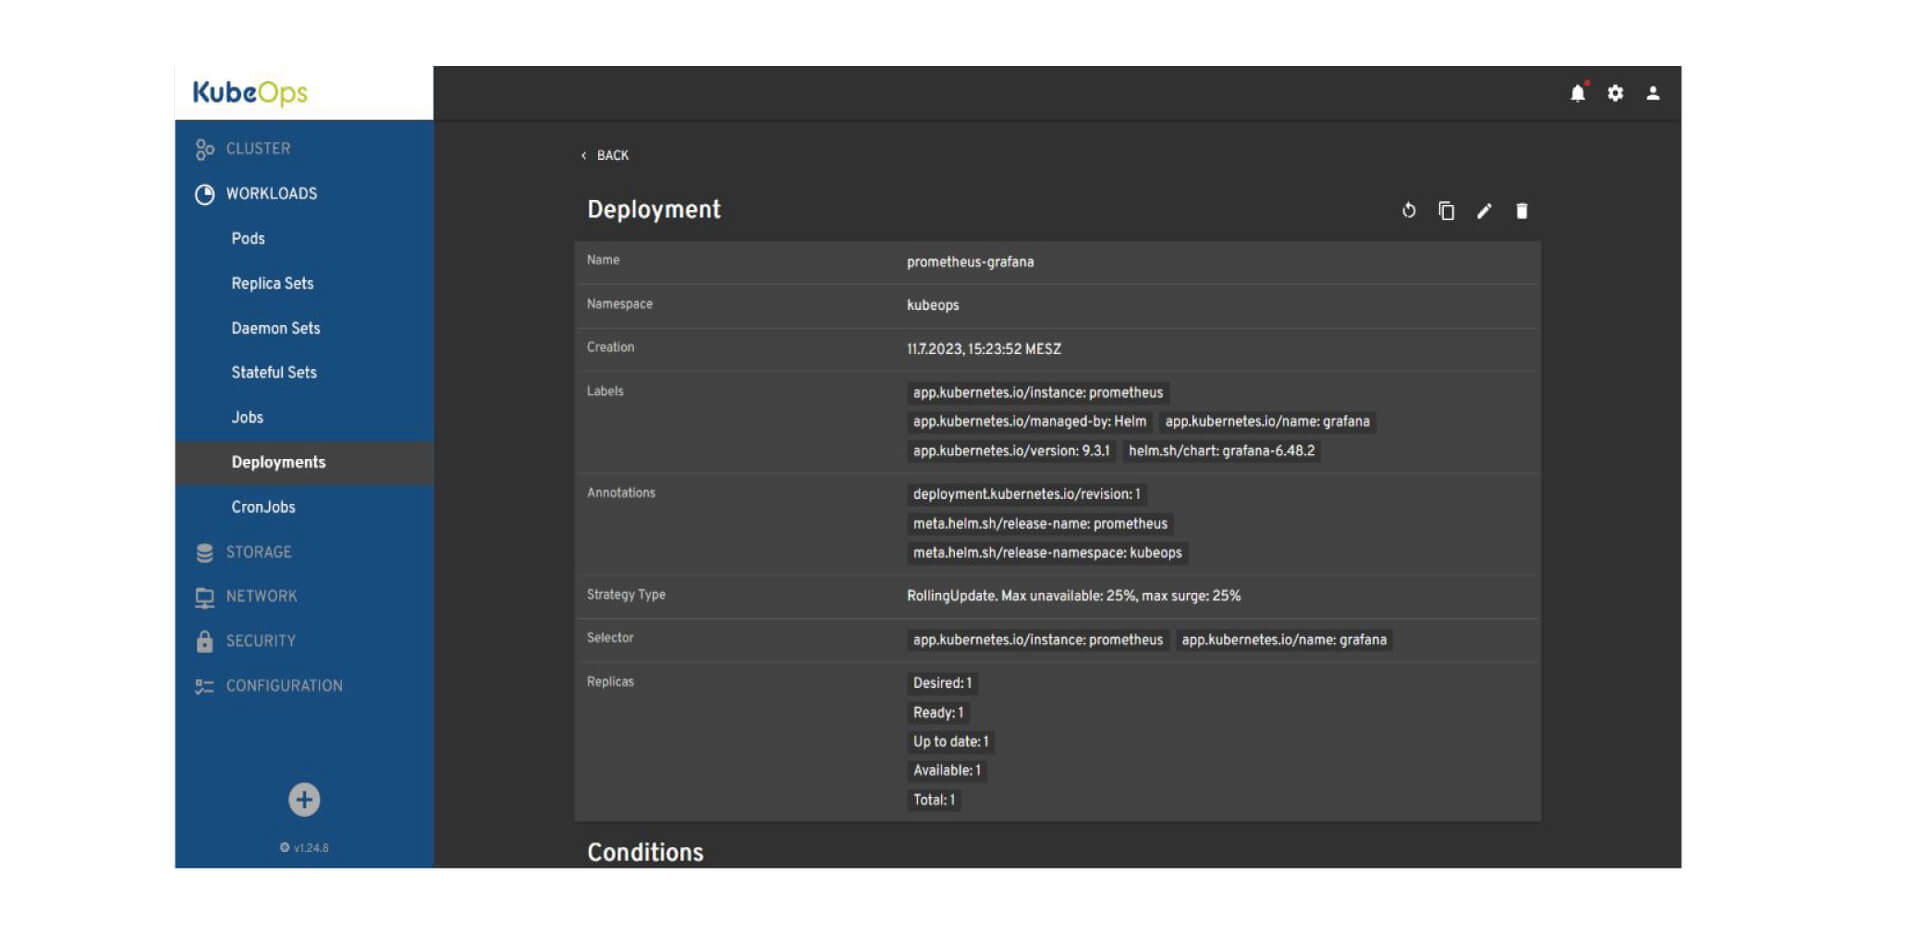 Das Bild zeigt eine Benutzeroberfläche des KubeOps-Dashboards, die Details einer Bereitstellung mit dem Namen 